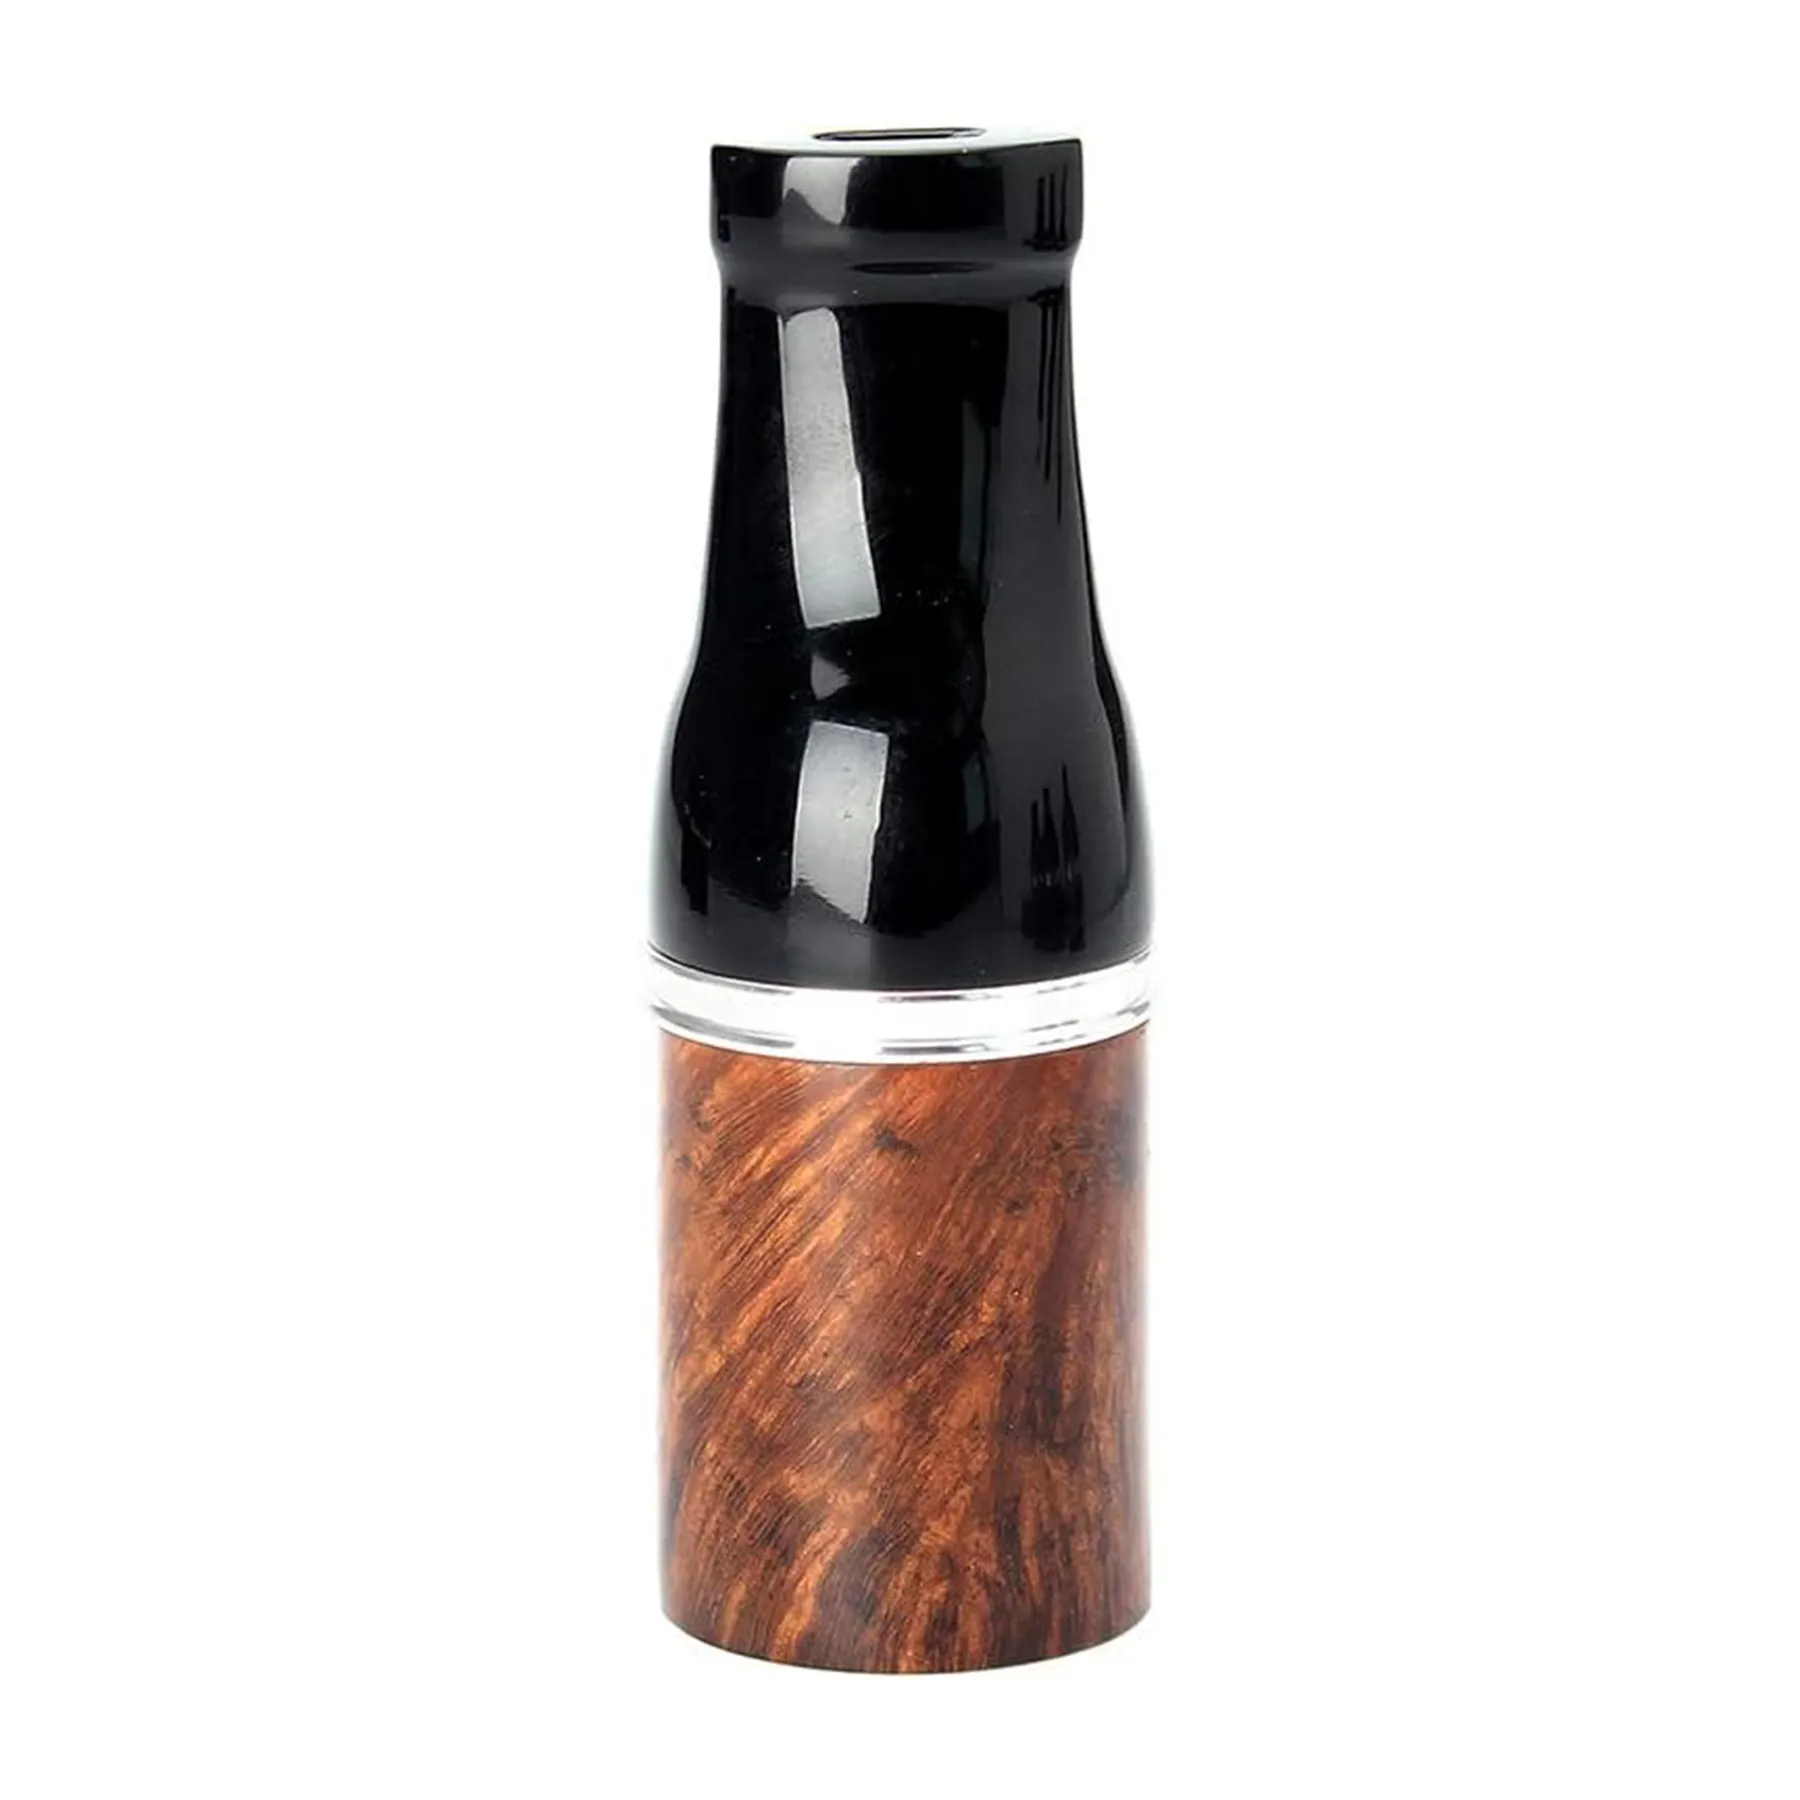 Soporte para boquilla de cigarro de madera de brezo, soporte para filtro de cigarro de madera Natural hecho a mano